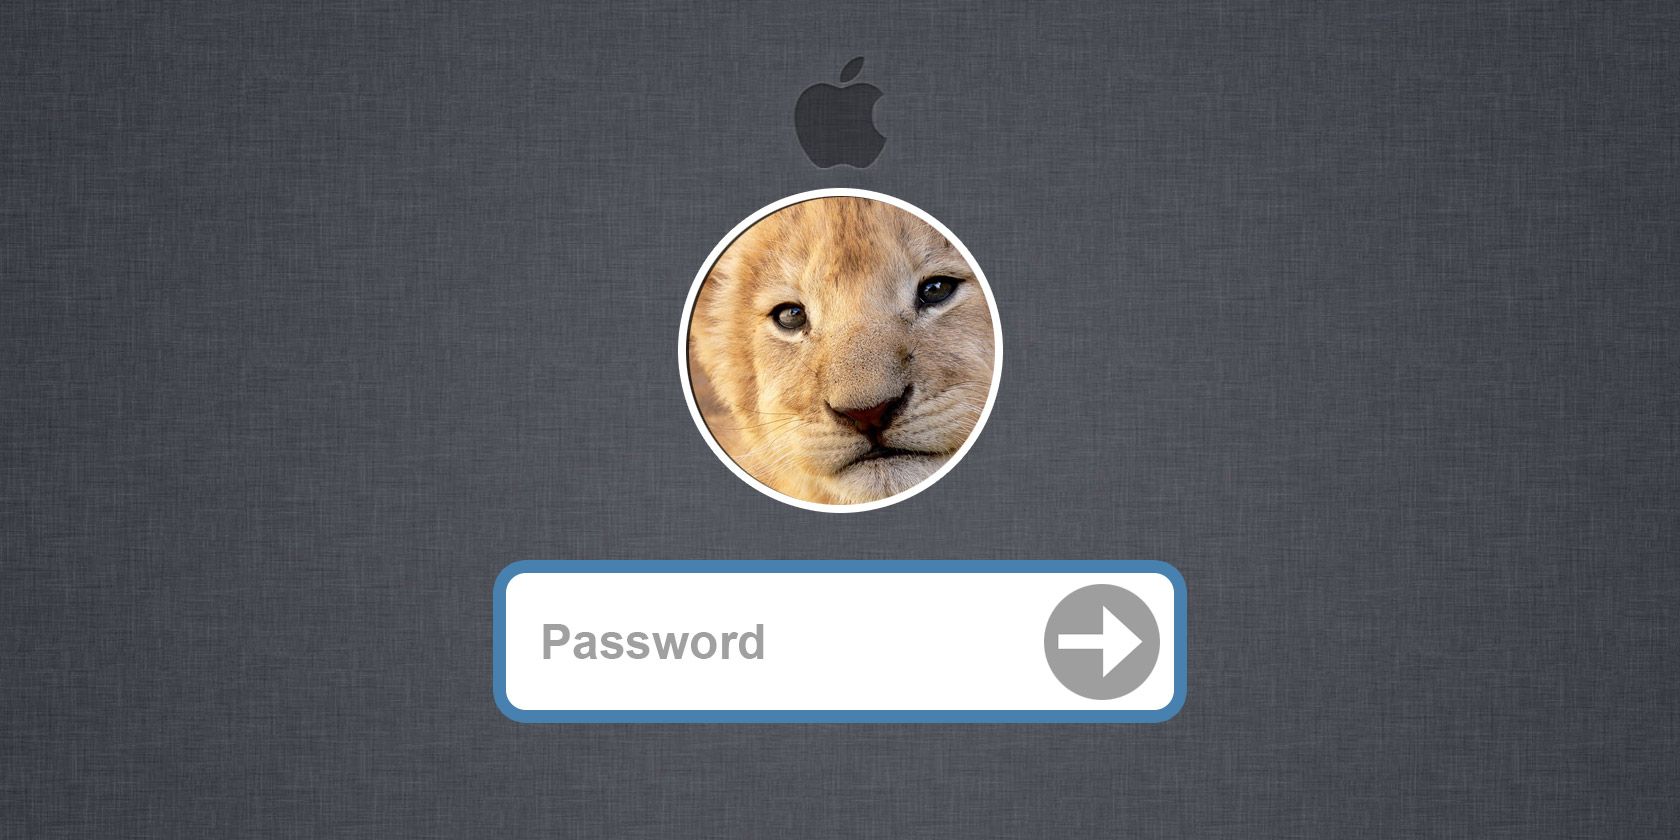 osx-password